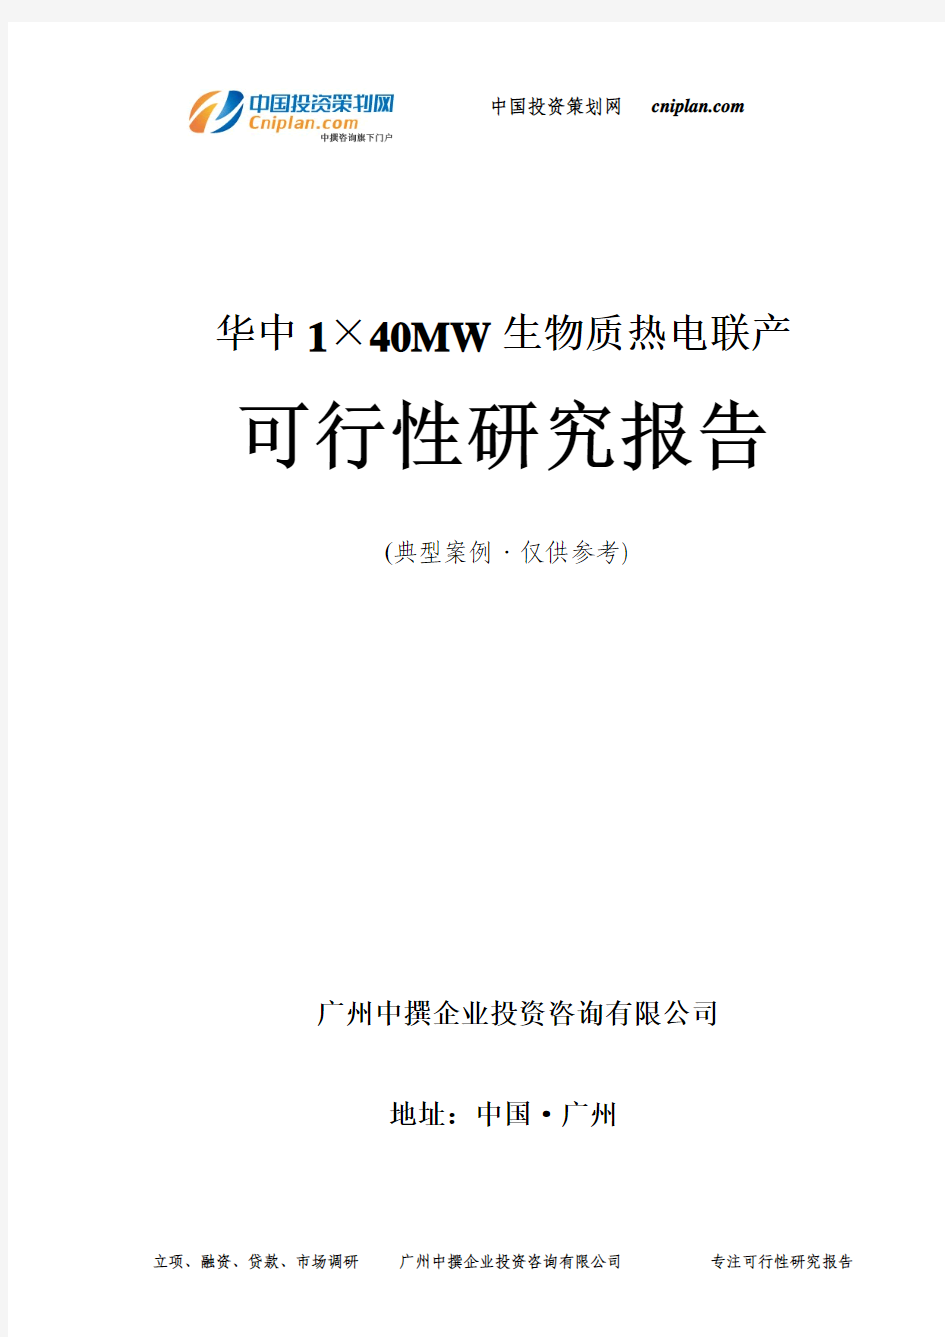 1×40MW生物质热电联产可行性研究报告-广州中撰咨询